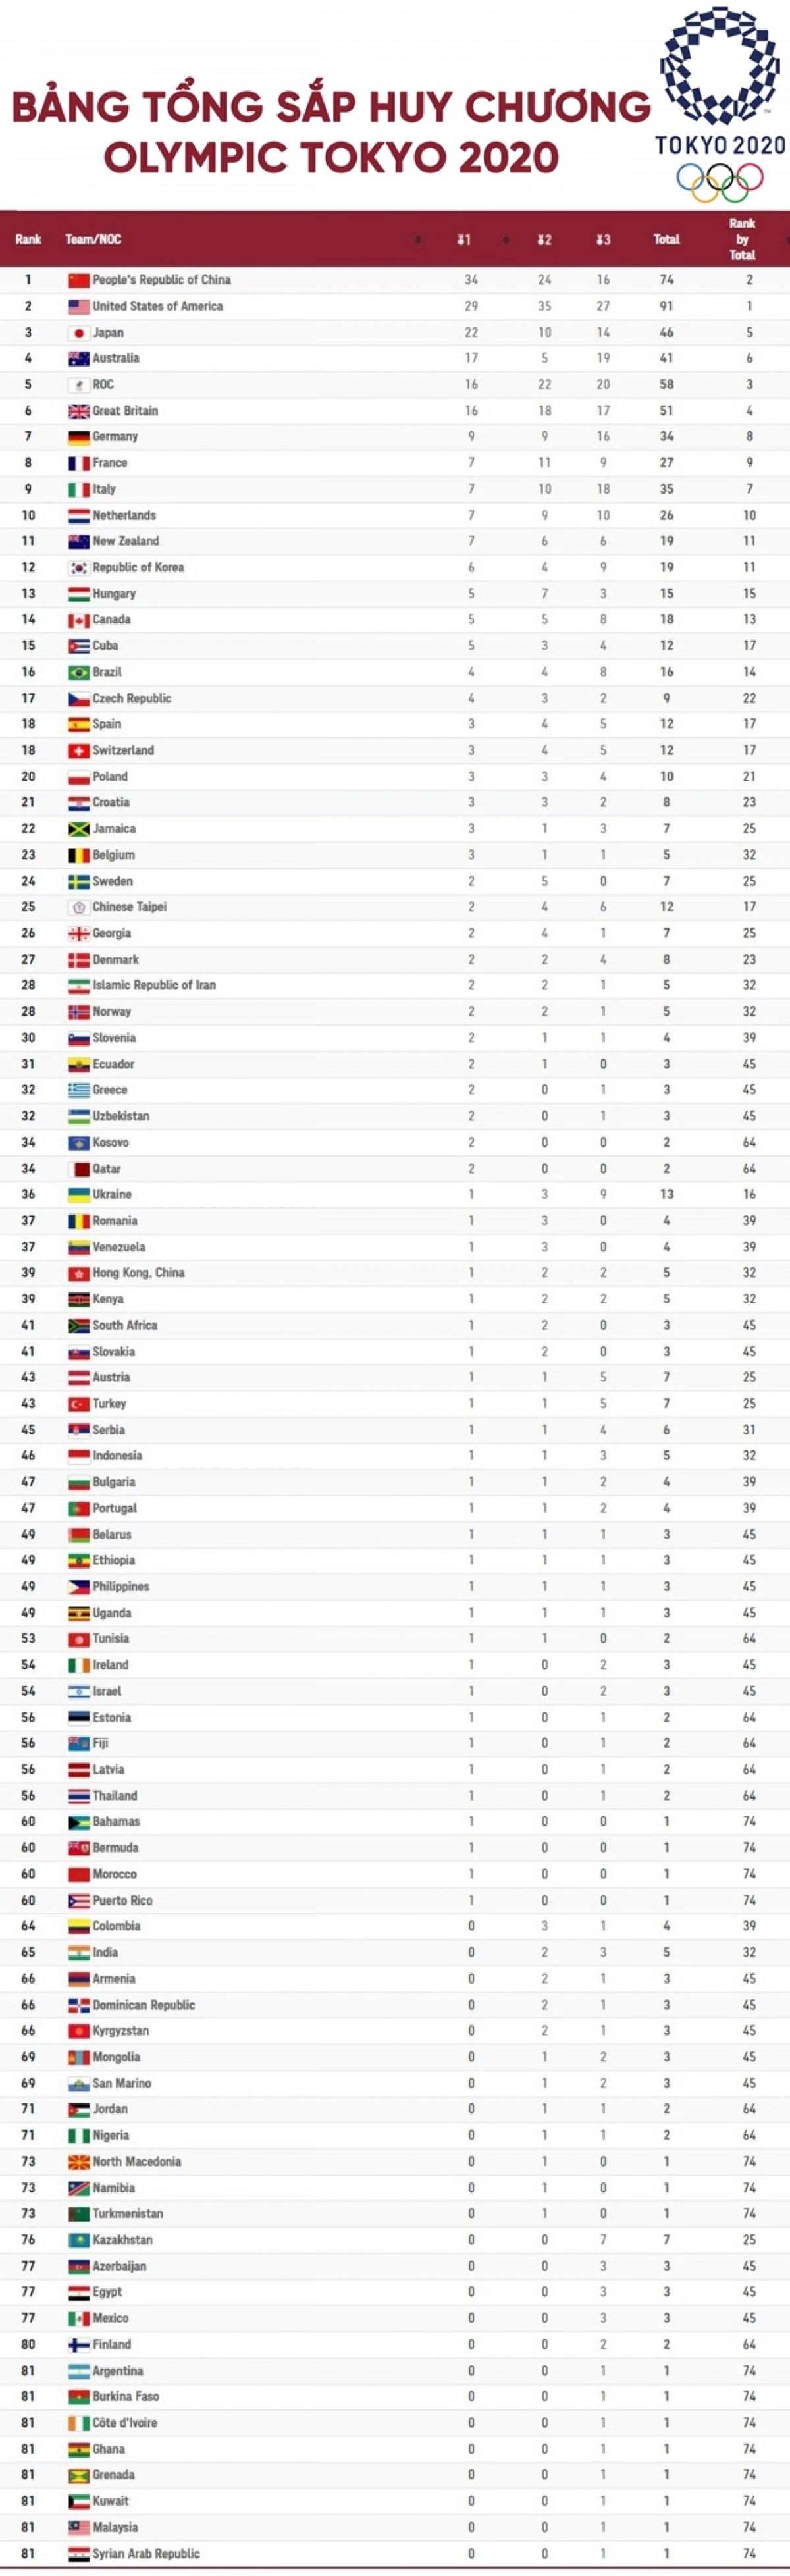 Bảng tổng sắp huy chương Olympic Tokyo 2020: Mỹ thu hẹp khoảng cách với Trung Quốc - Ảnh 1.